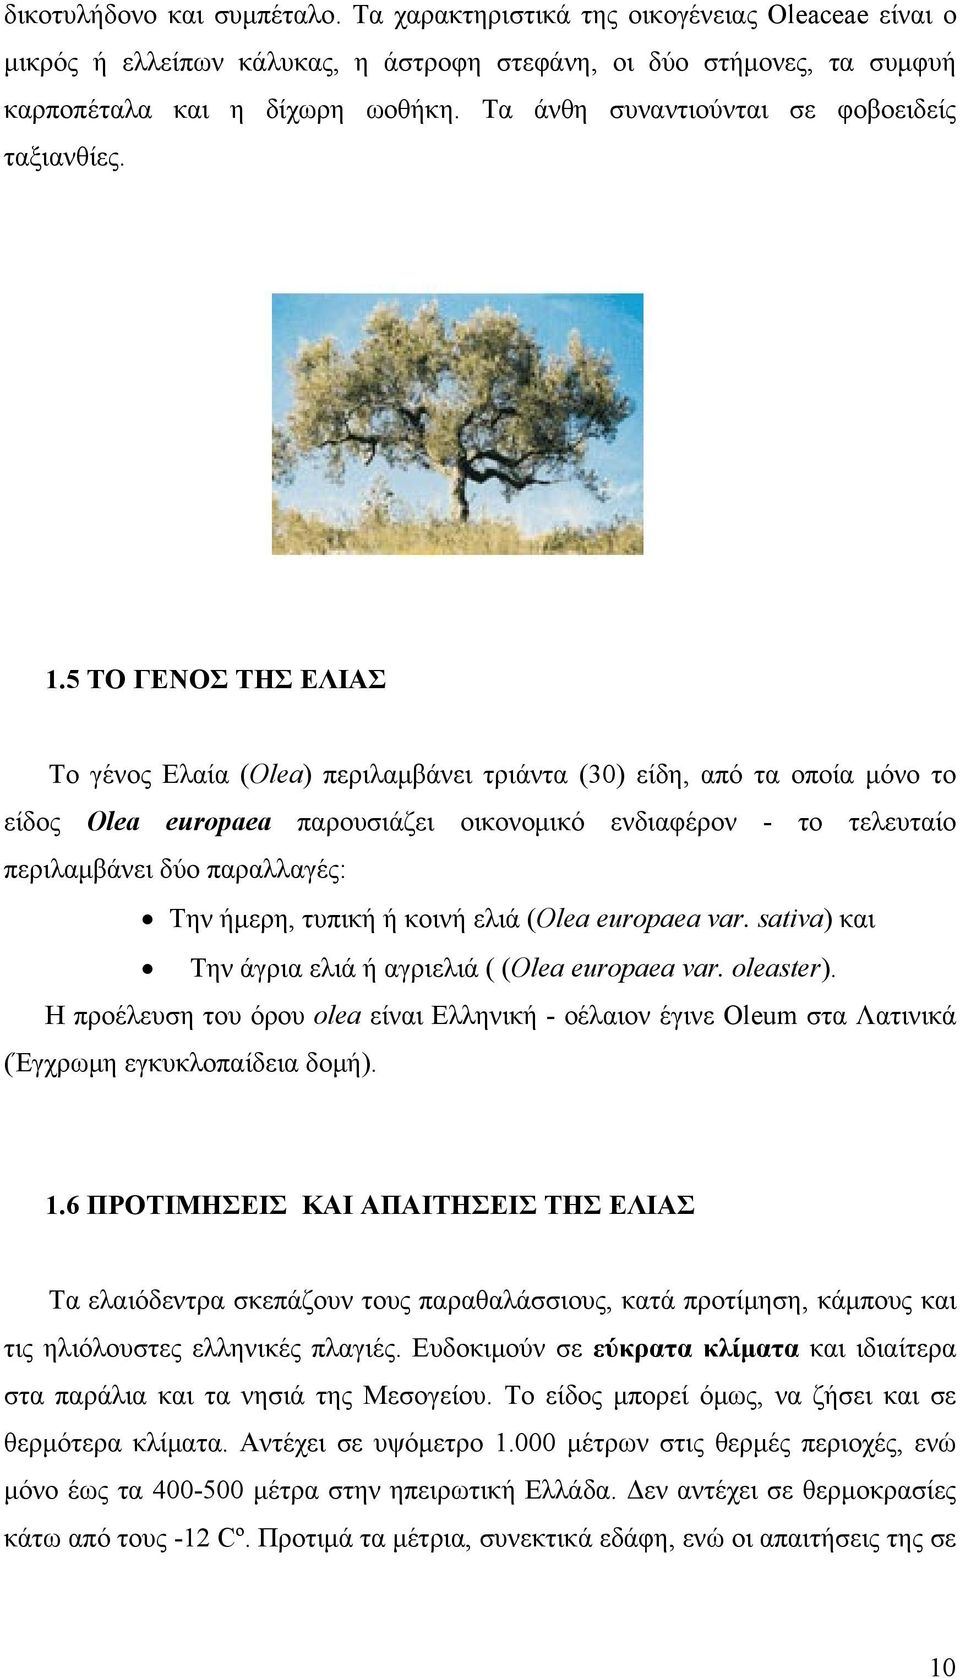 5 ΤΟ ΓΕΝΟΣ ΤΗΣ ΕΛΙΑΣ Το γένος Ελαία (Olea) περιλαμβάνει τριάντα (30) είδη, από τα οποία μόνο το είδος Olea europaea παρουσιάζει οικονομικό ενδιαφέρον - το τελευταίο περιλαμβάνει δύο παραλλαγές: Την